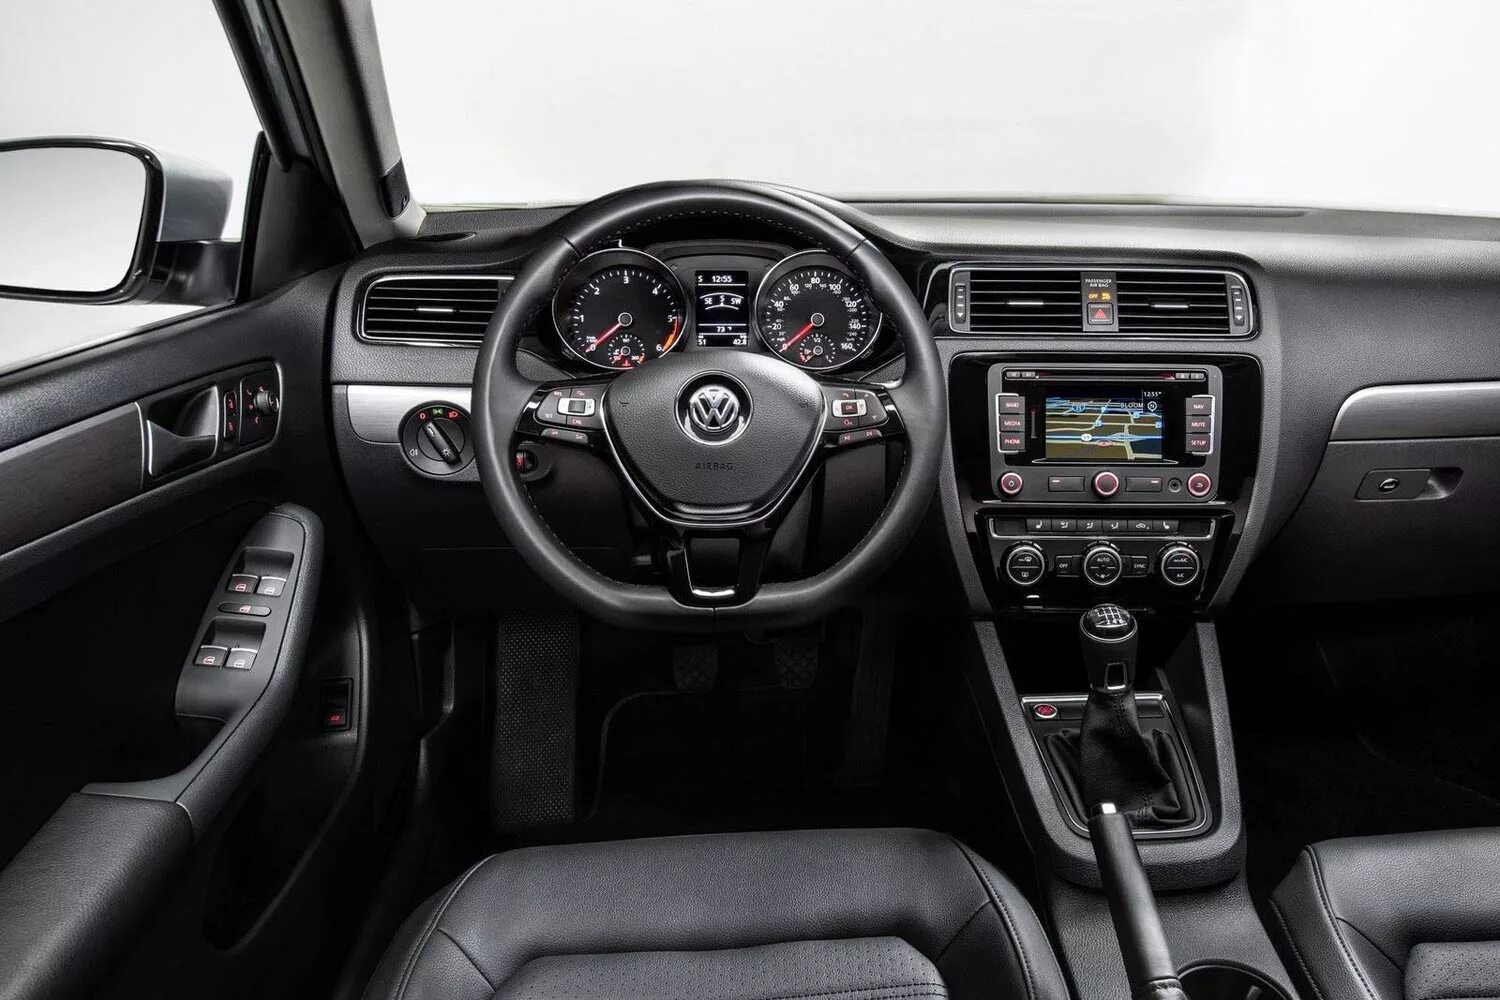 Volkswagen Jetta 2014 Interior. Volkswagen Jetta 6 салон. Фольксваген Джетта 2015 интерьер. Фольксваген Джетта салон. Volkswagen jetta салон